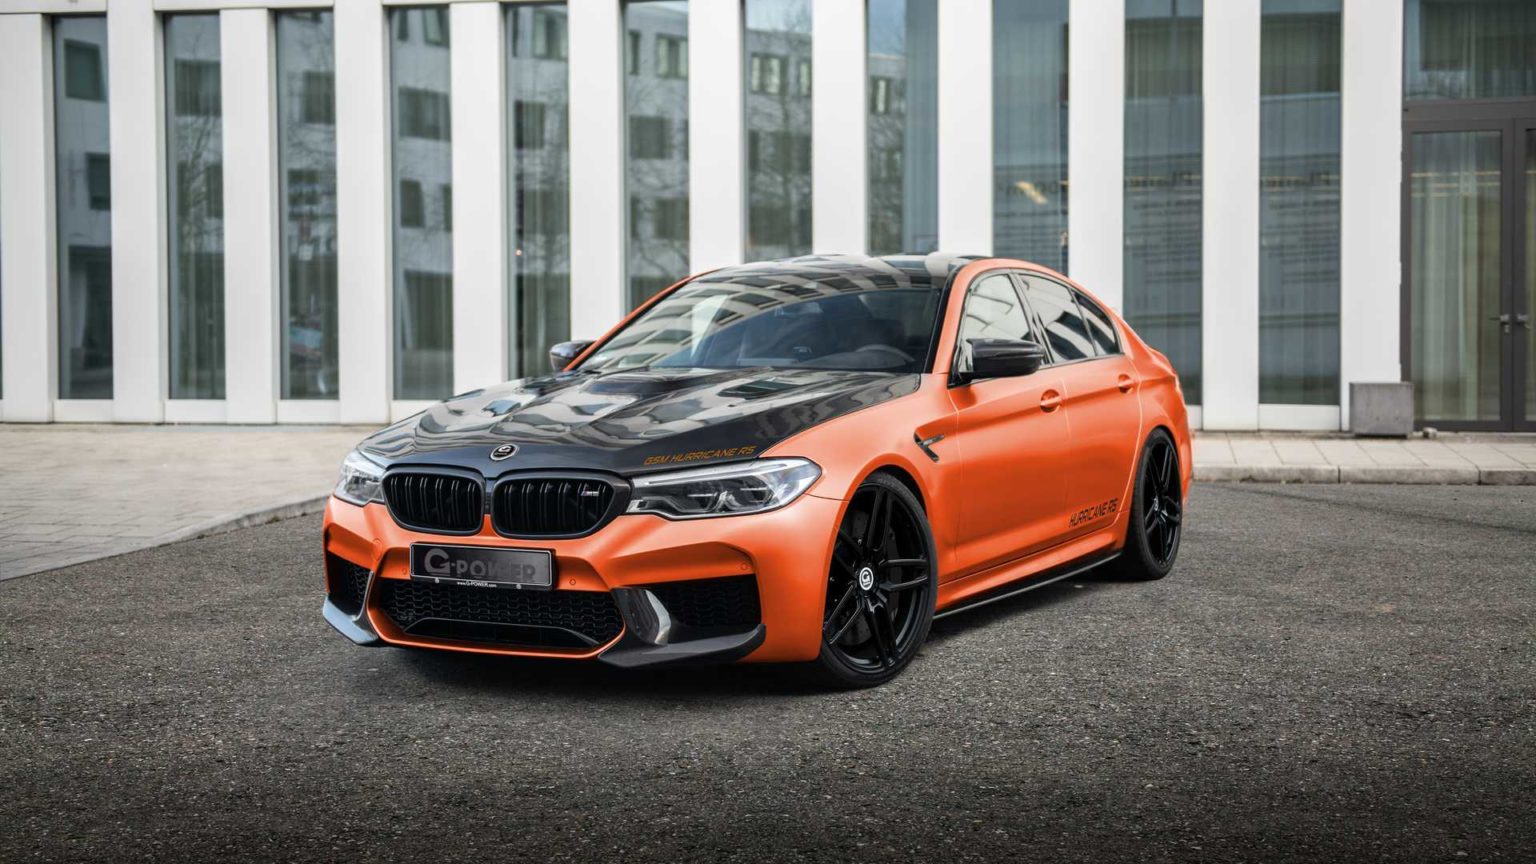 BMW M5 od GPower ma 830 KM i 1000 Nm, a setkę robi w 2,5